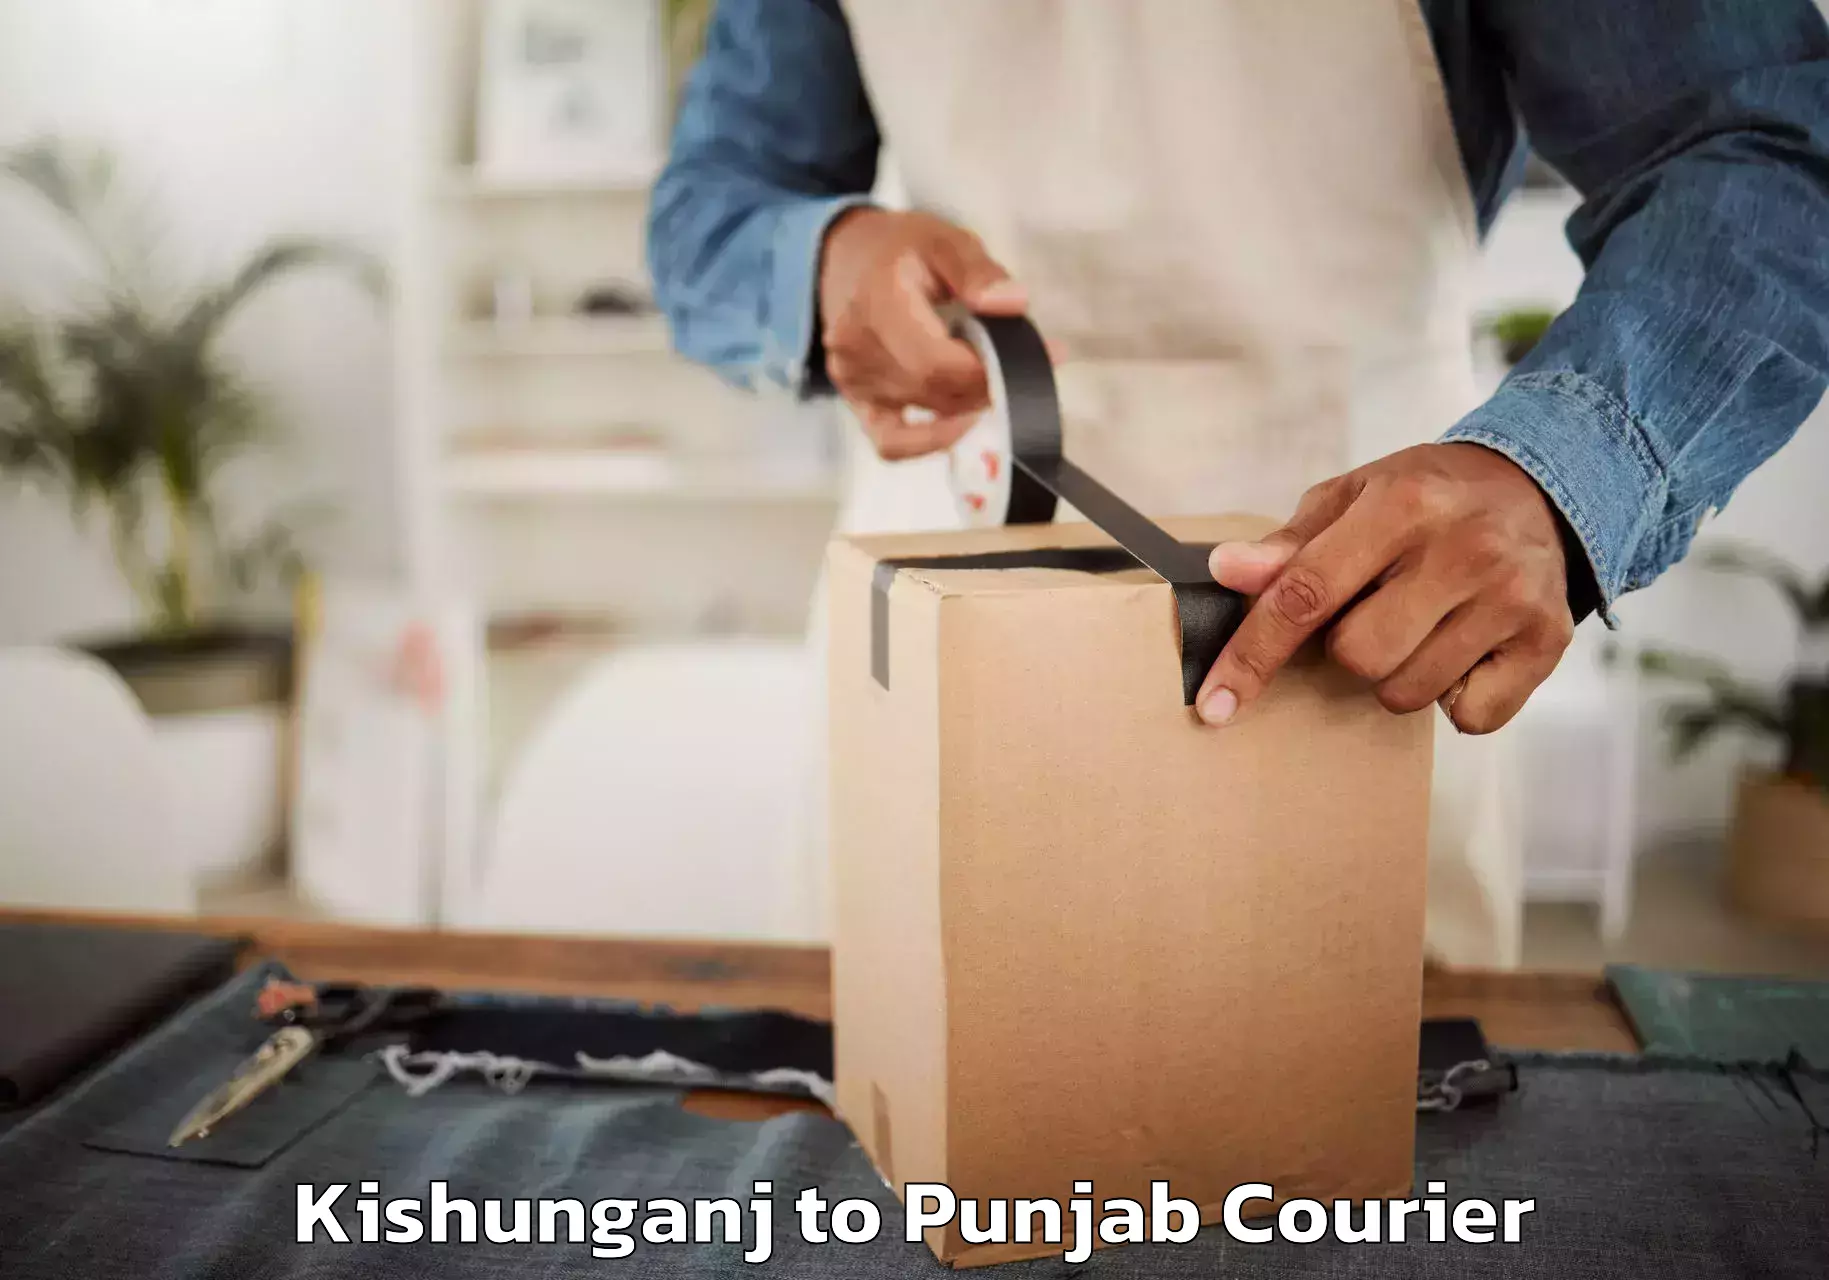 Budget-friendly moving services Kishunganj to Central University of Punjab Bathinda